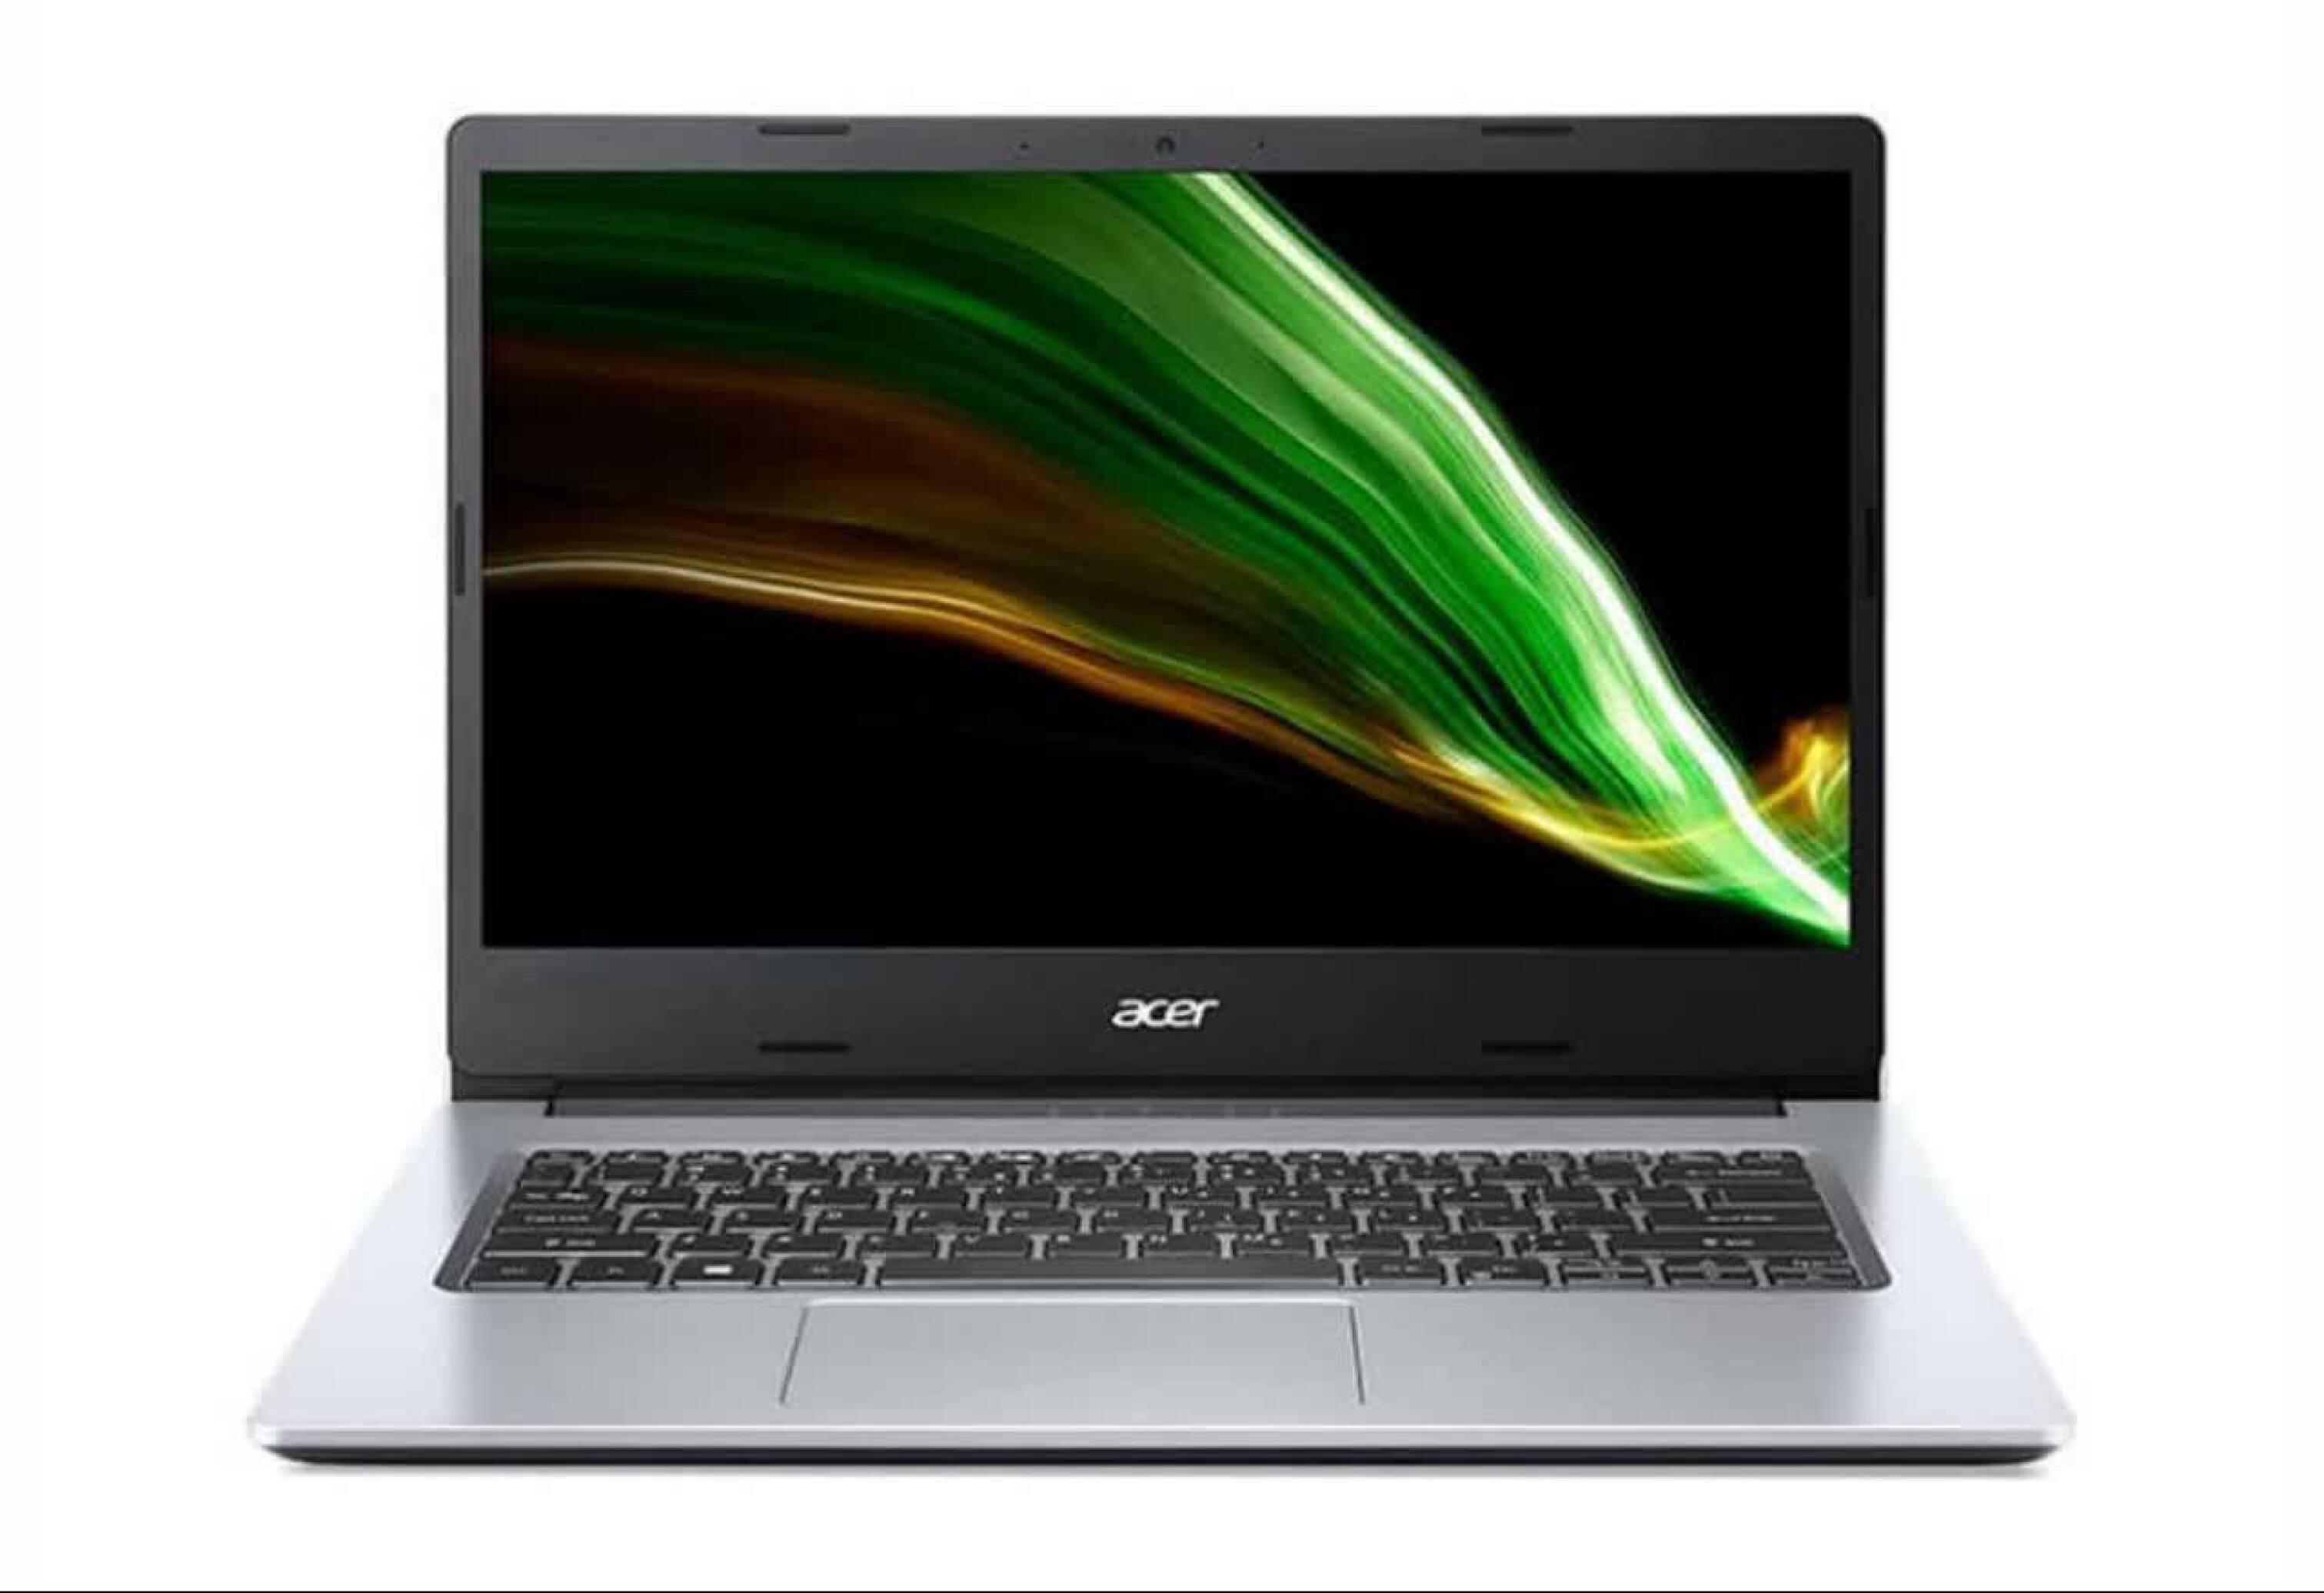  Acer Aspire A515 i3 